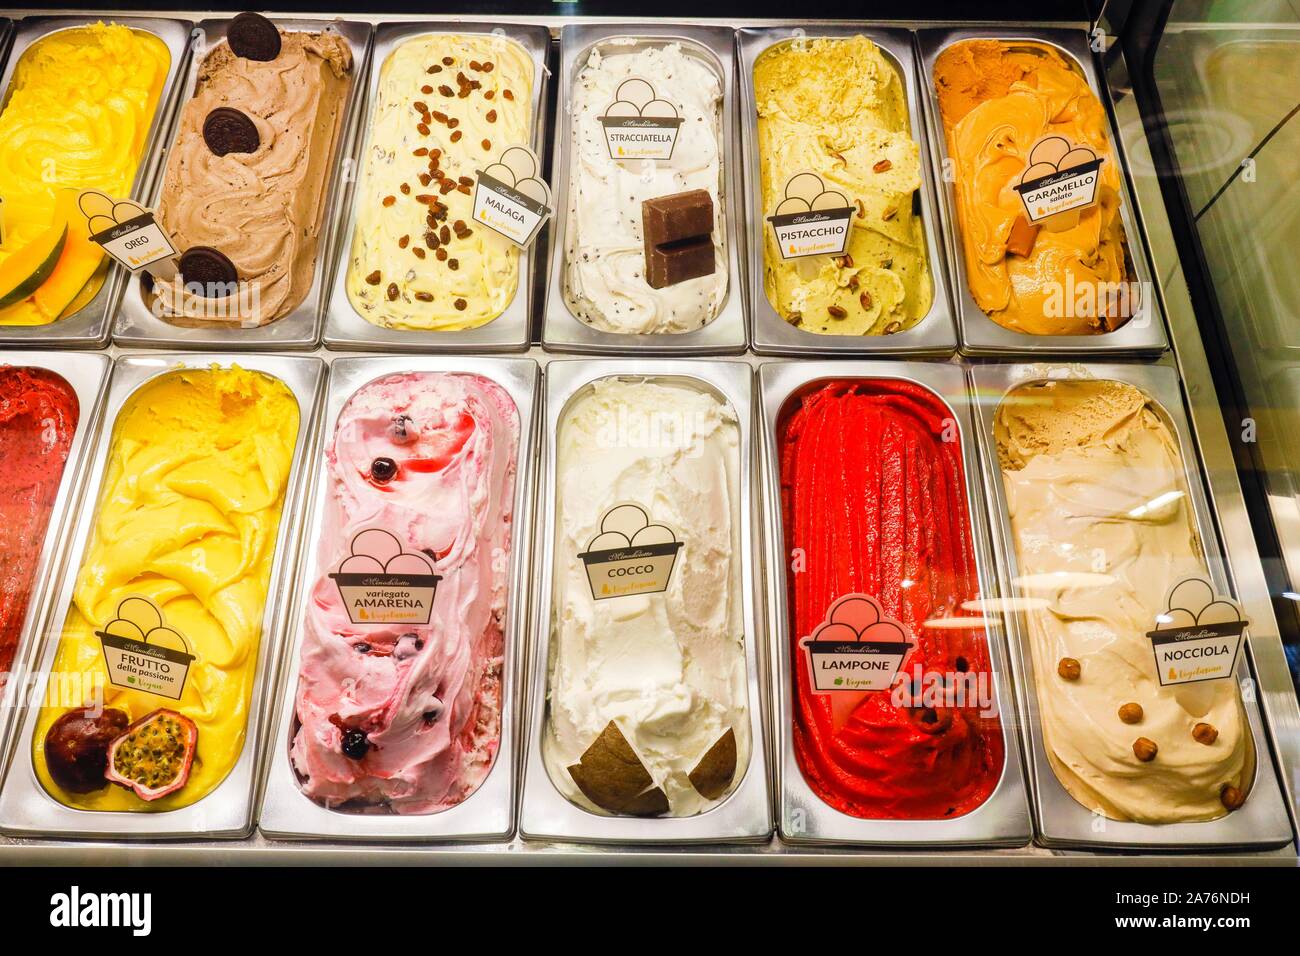 Italienisches Eis in der kühltheke einer Eisdiele, Anuga Messe, Köln, Nordrhein-Westfalen, Deutschland Stockfoto